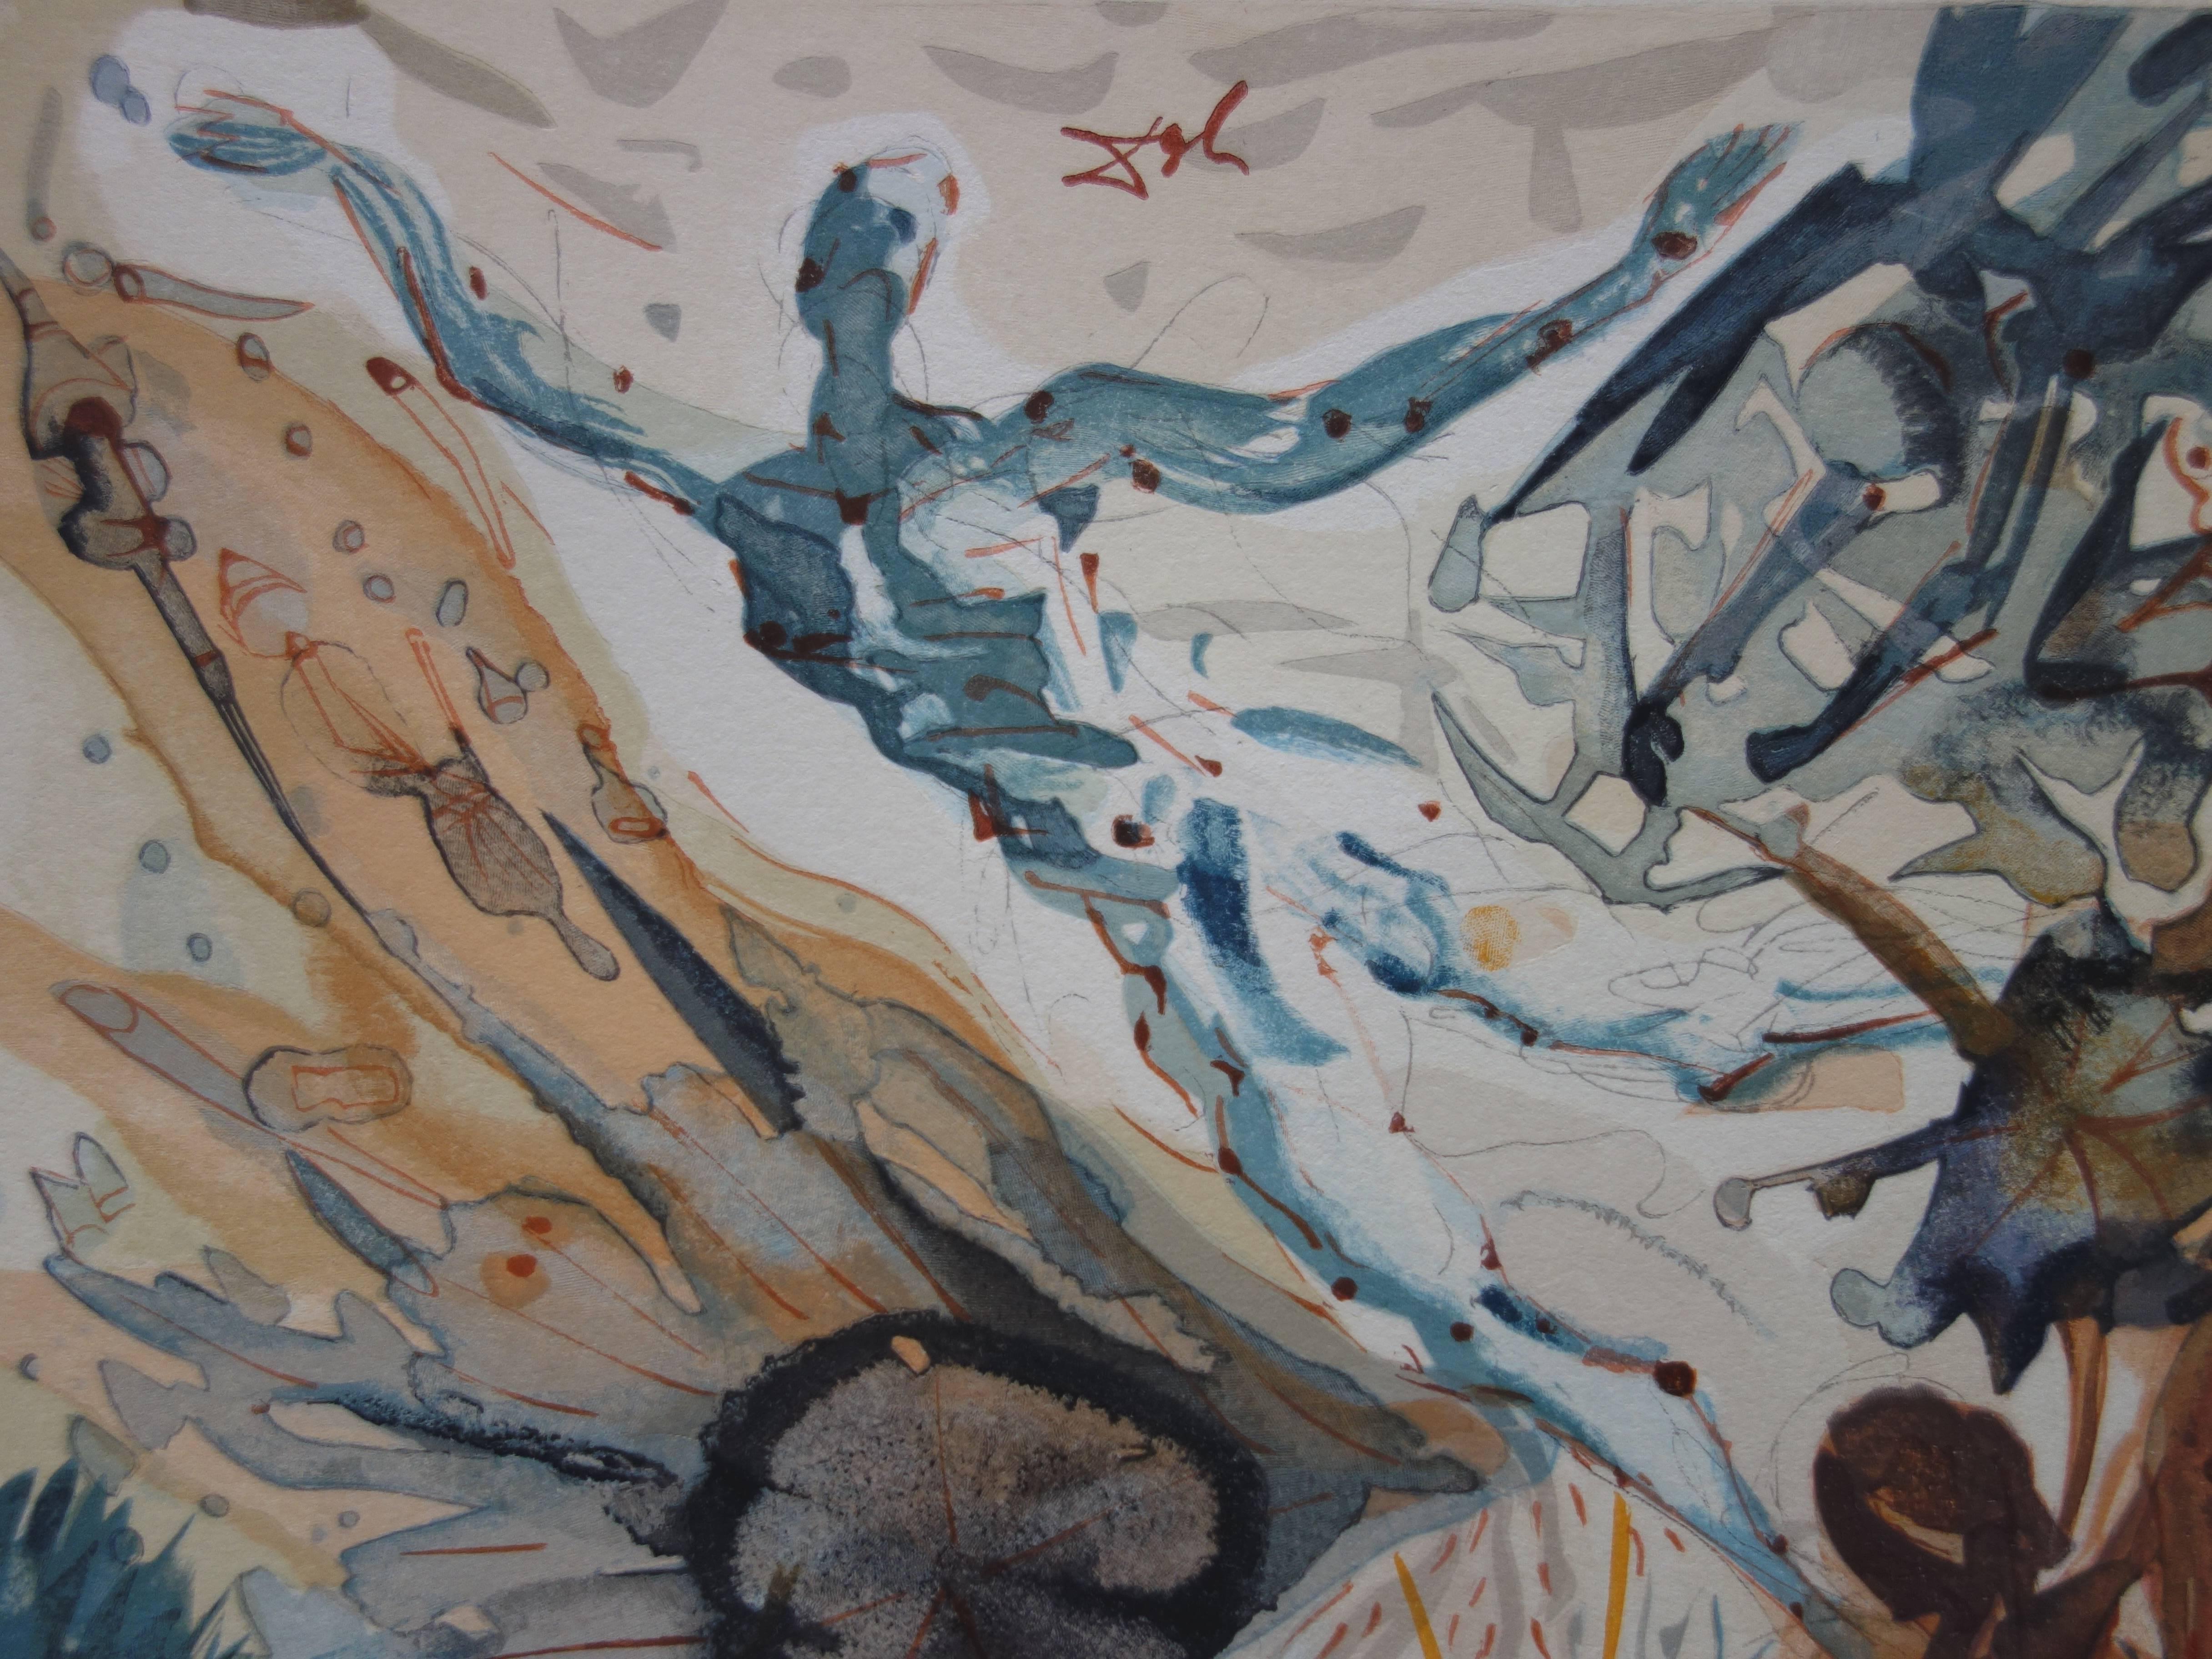 Purgatory 26 - Encounter with Two Groups of the Lusty - Taille sur bois en couleur - Print de Salvador Dalí